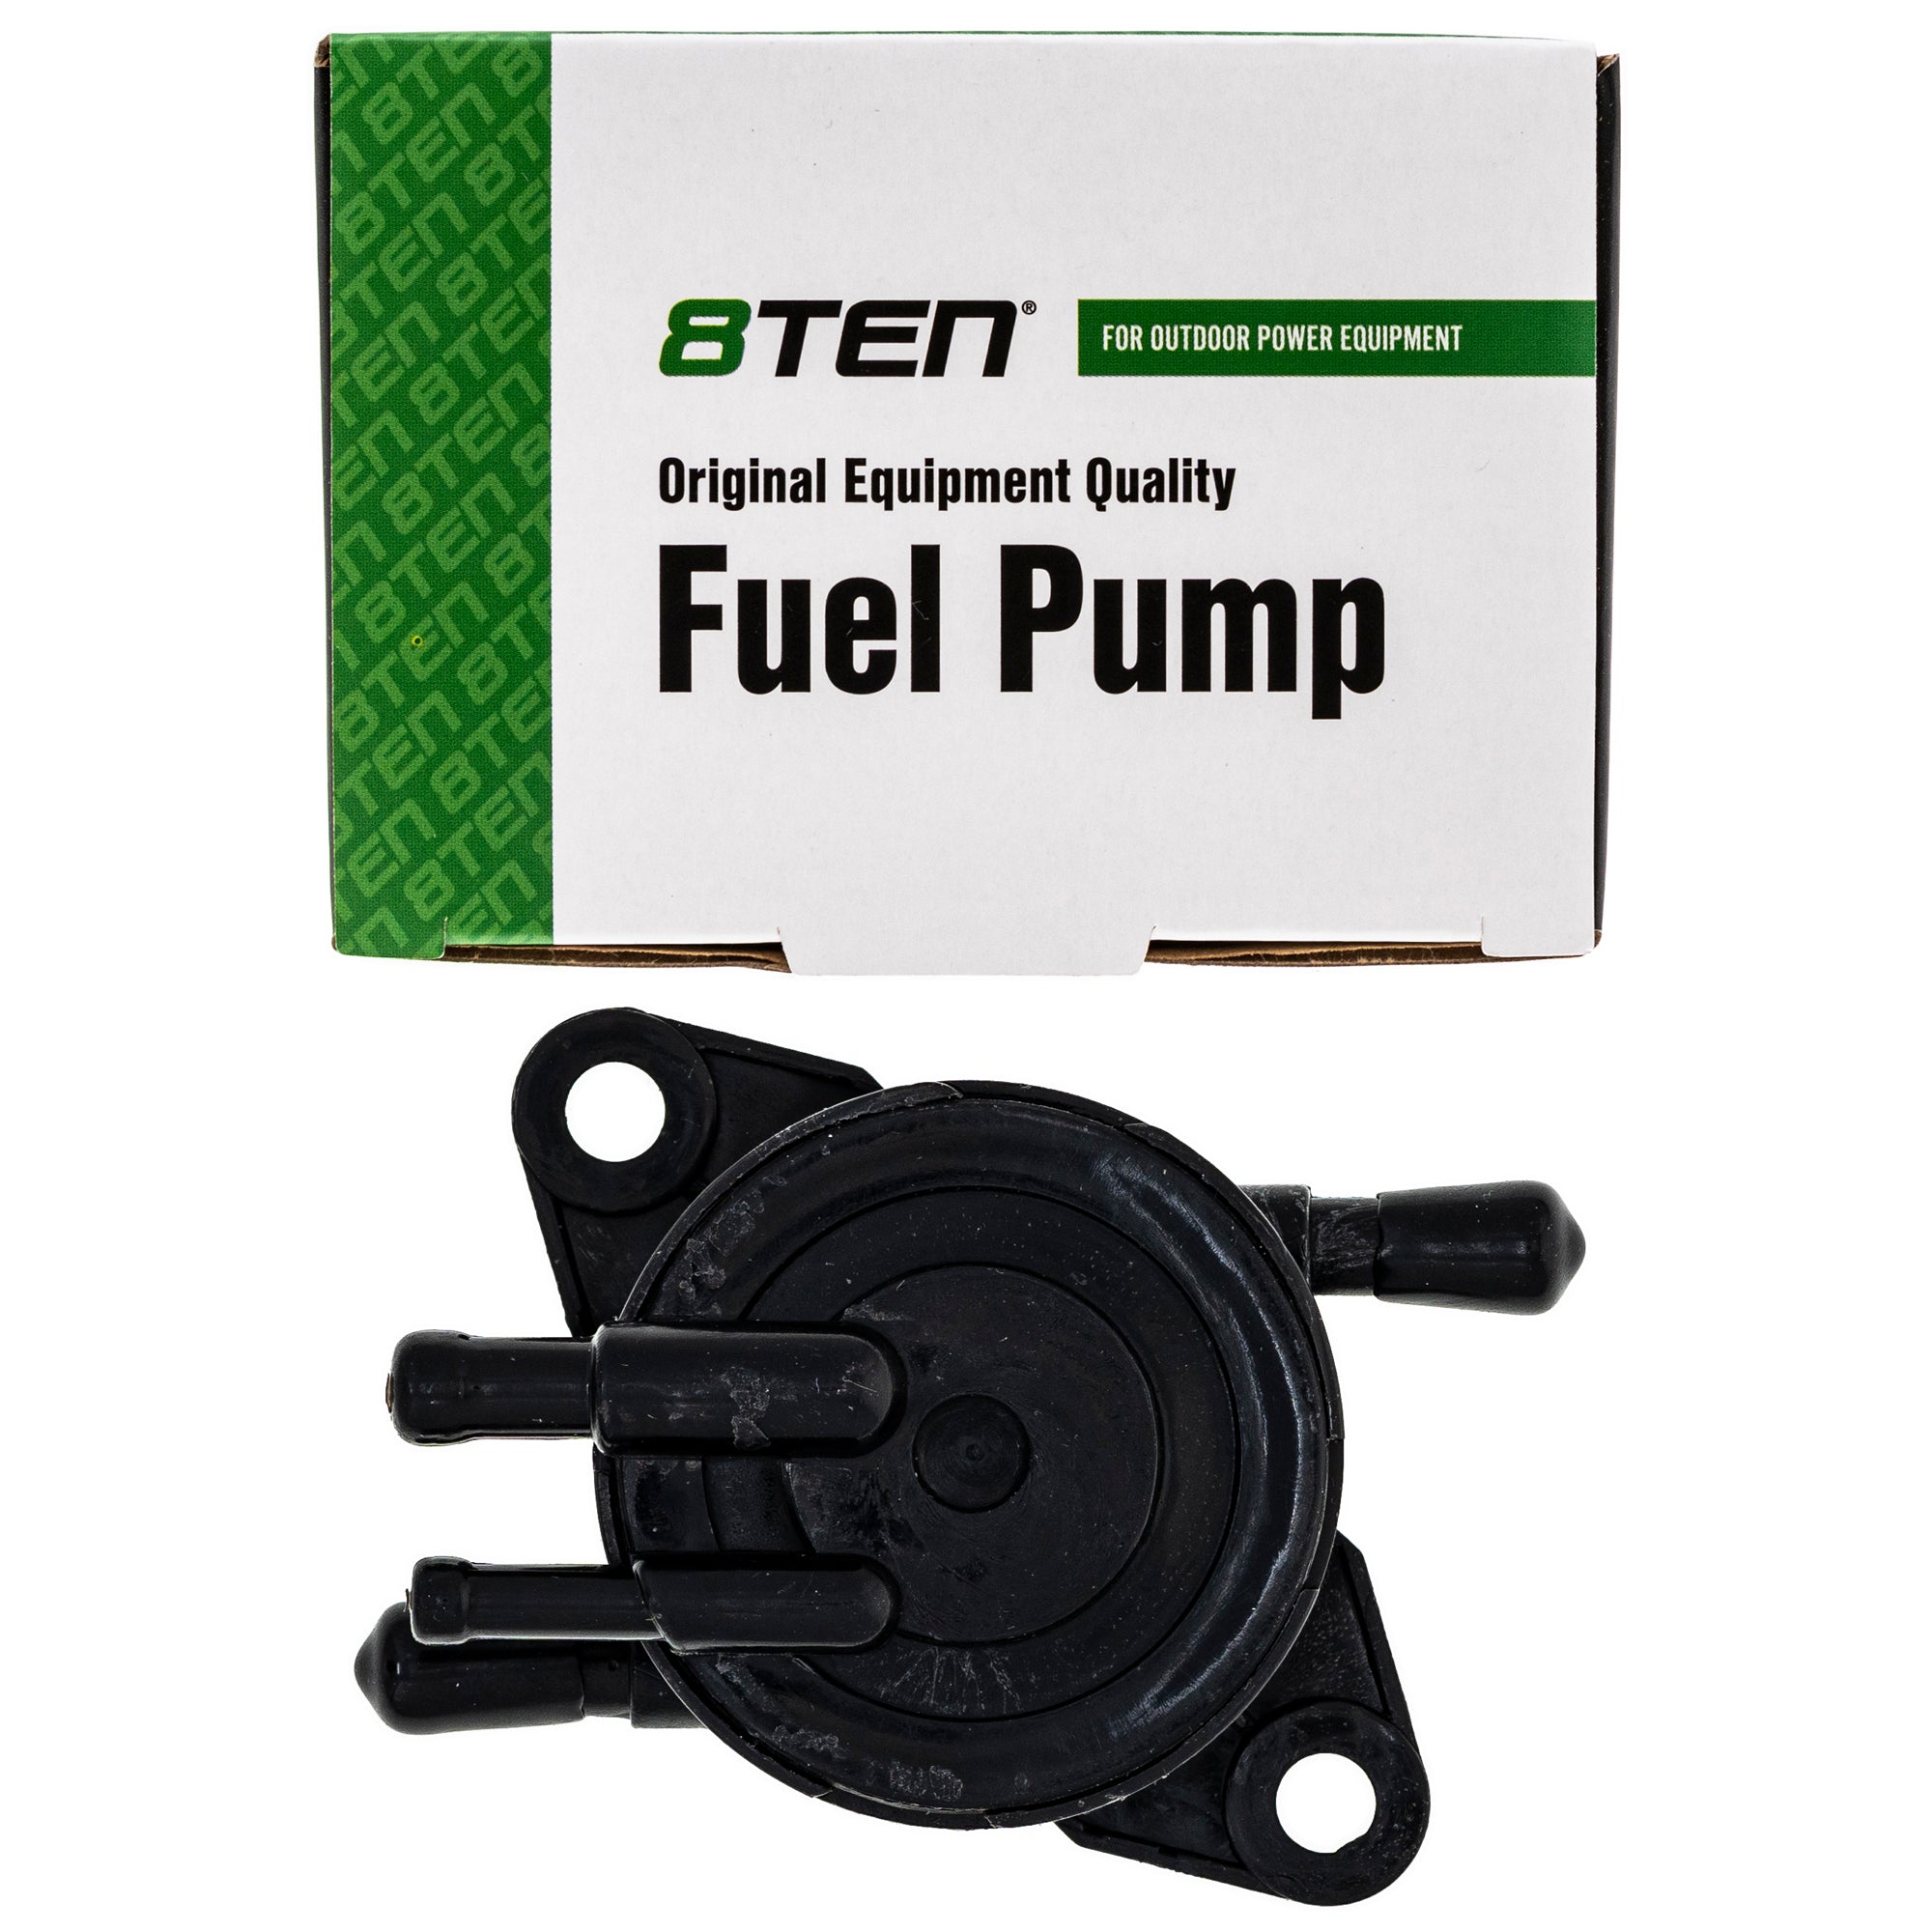 8TEN Fuel Pump Assembly